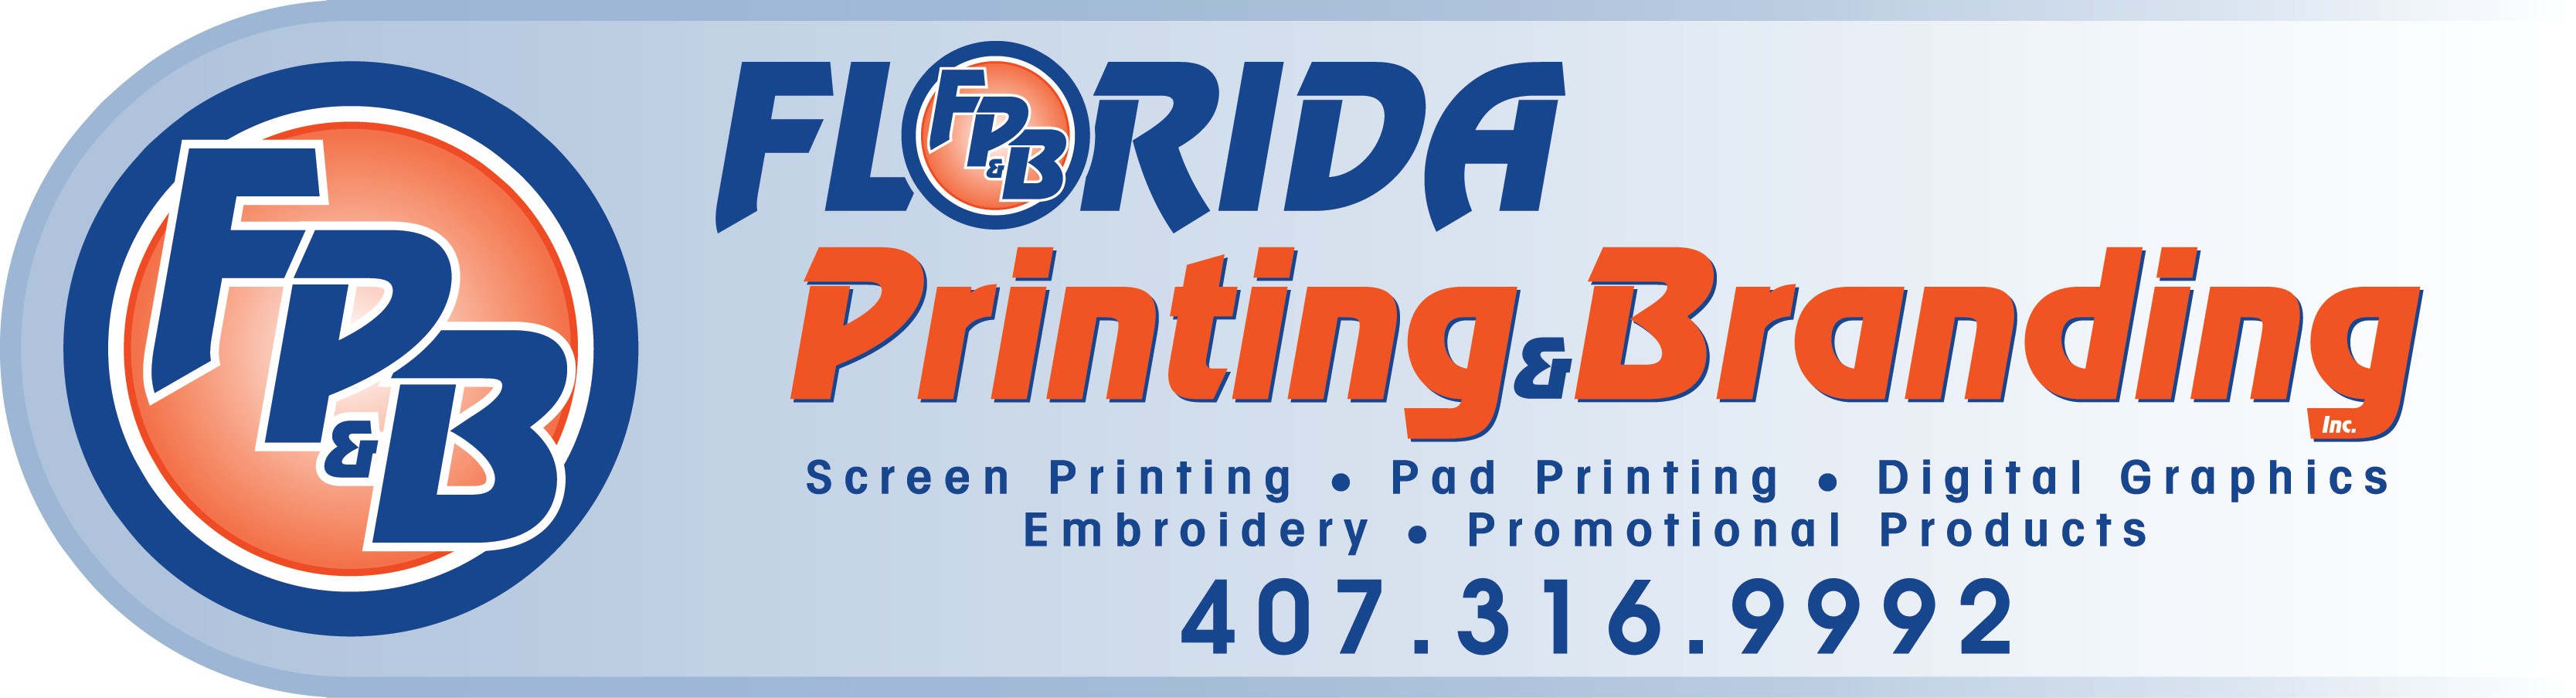 Florida Printing & Branding's Logo